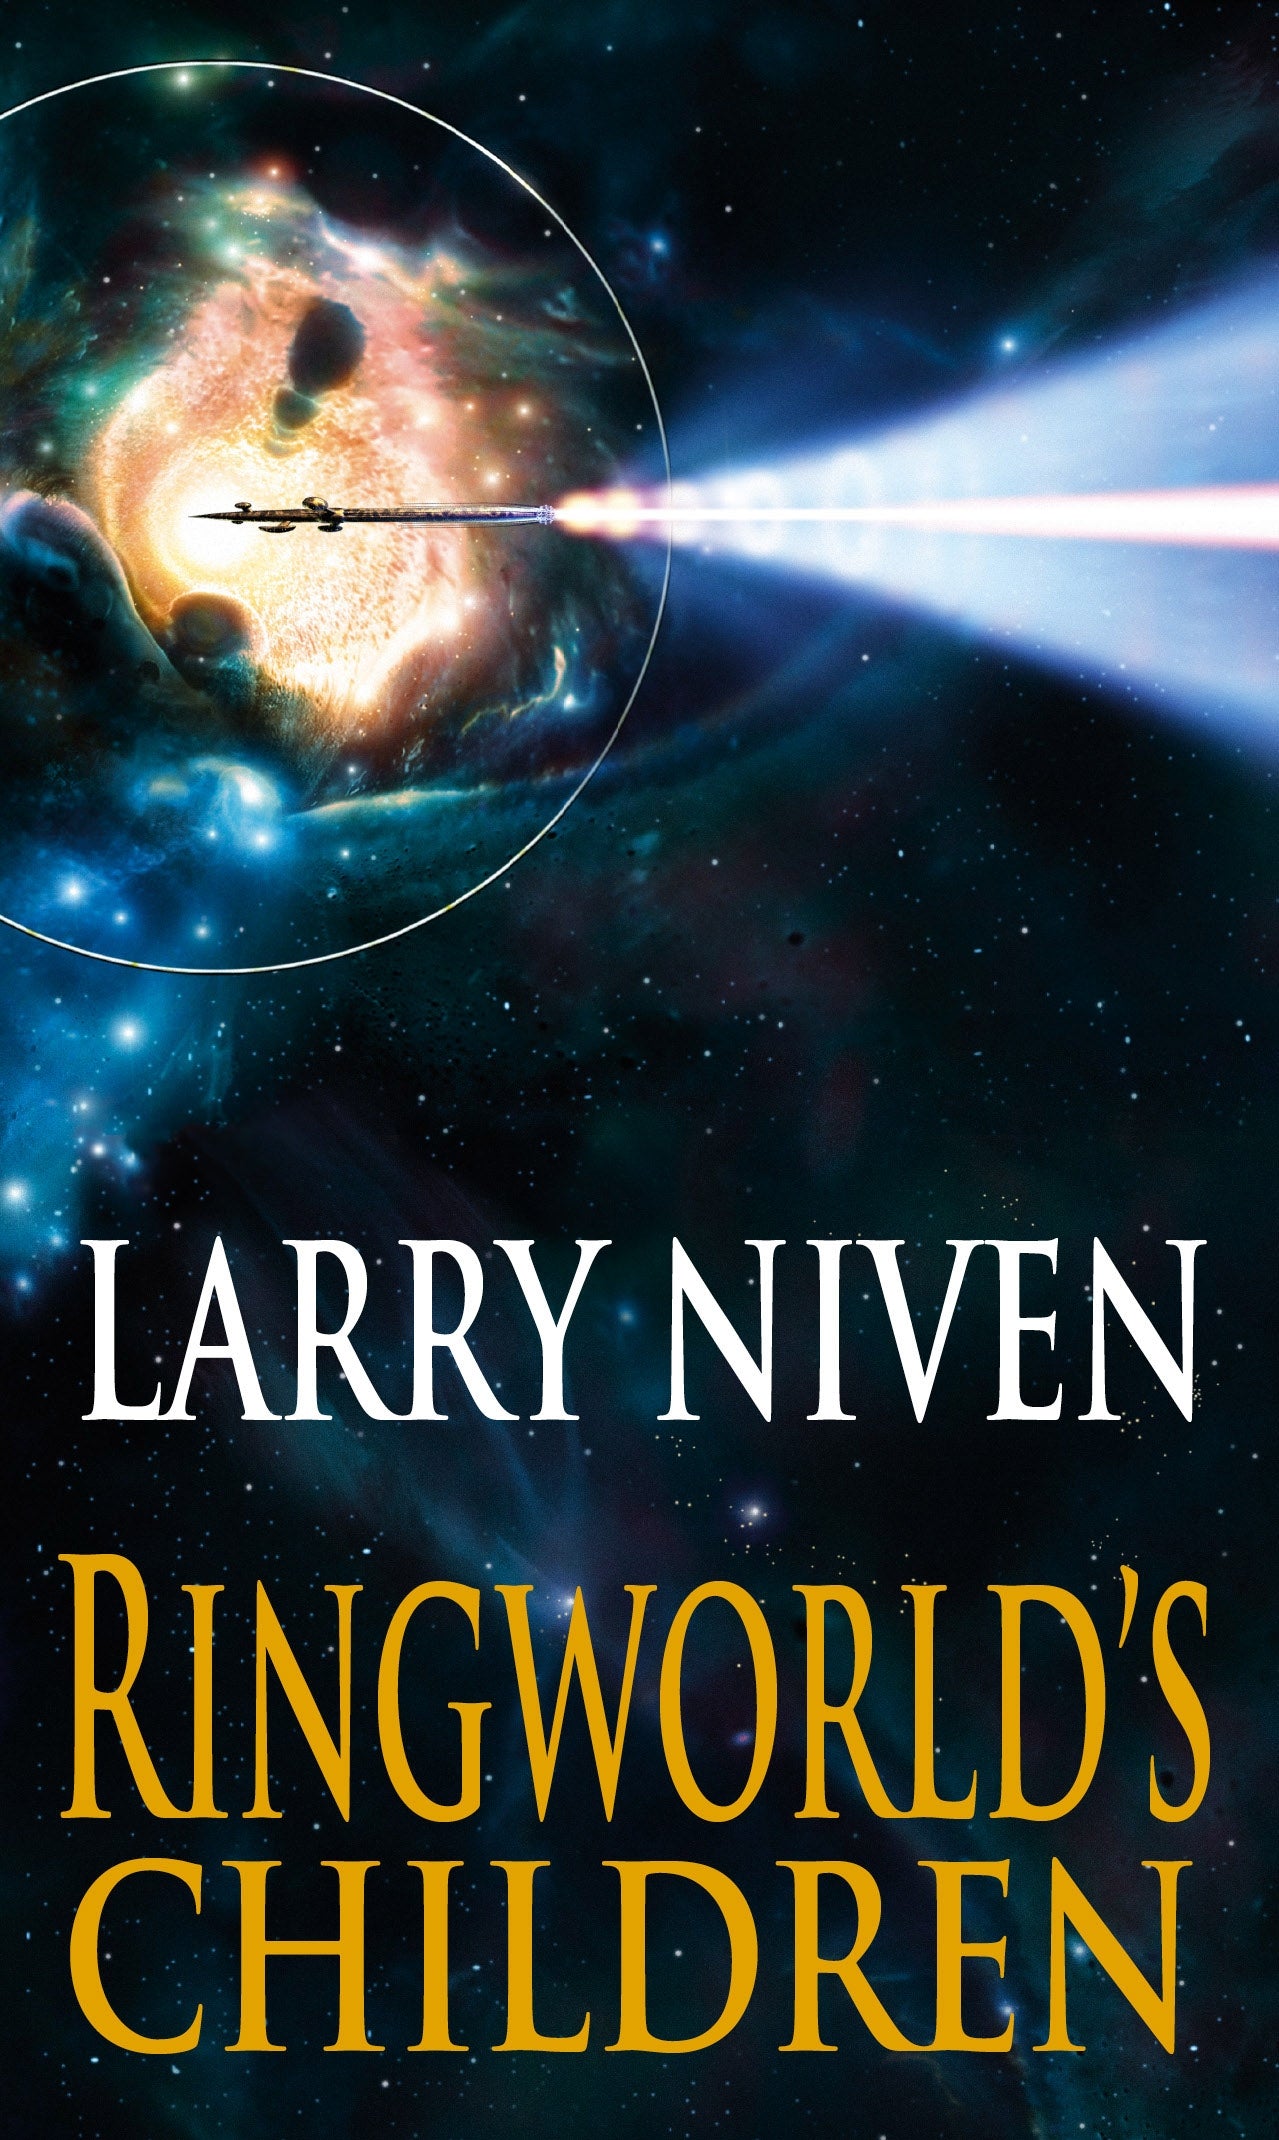 Ringworld's Children by Larry Niven